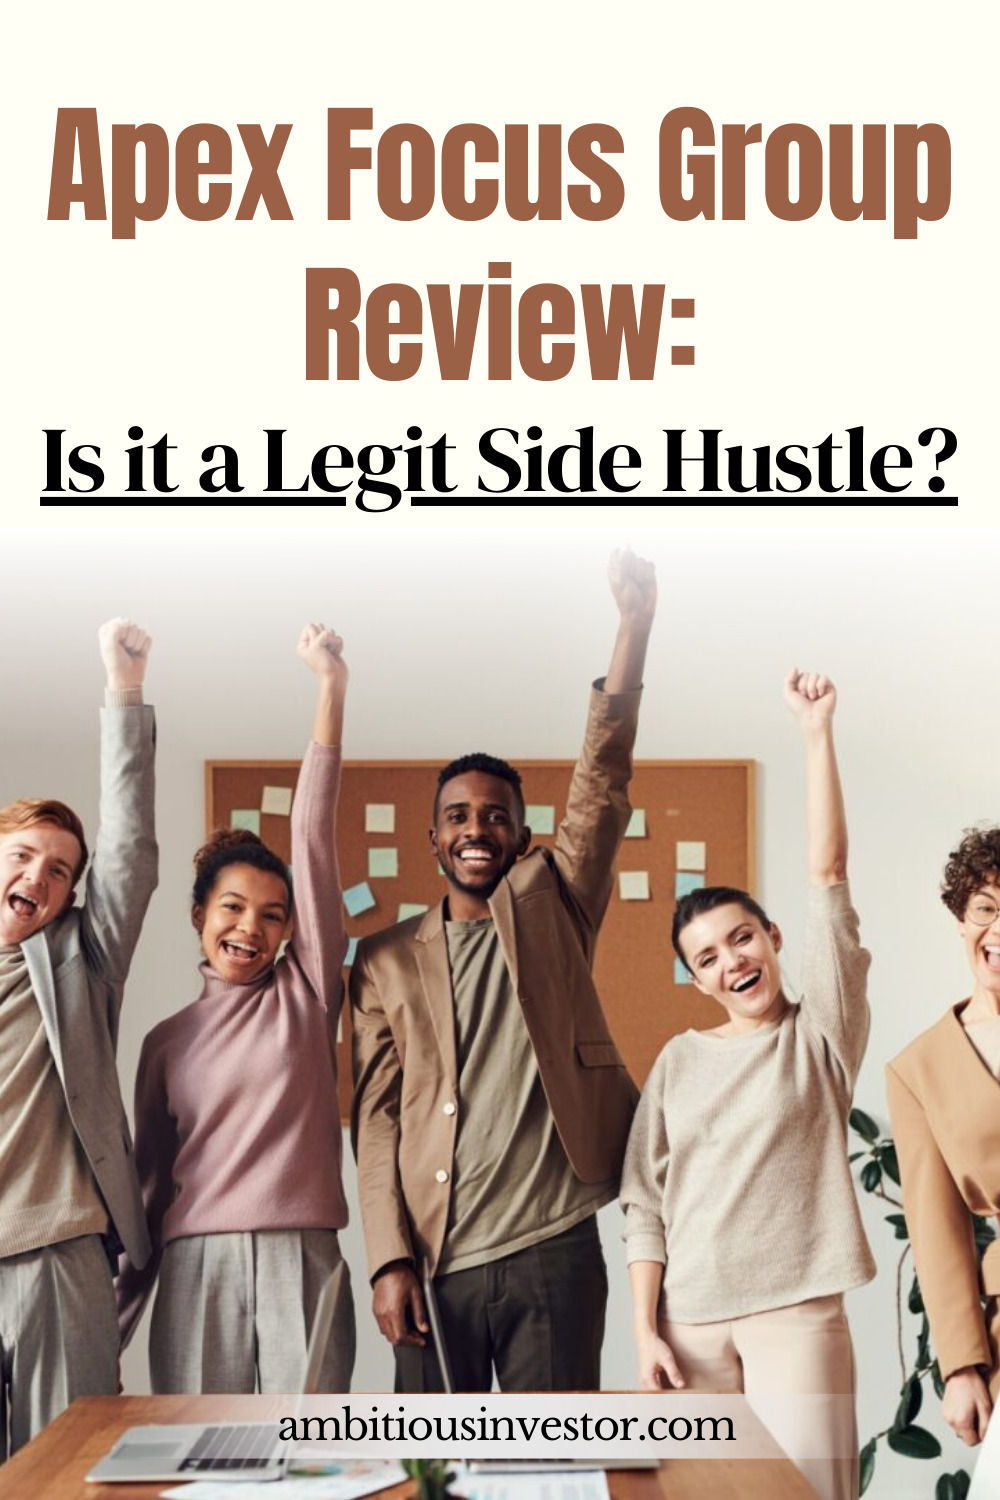 Apex Focus Group Review: Is it a Legit Side Hustle?